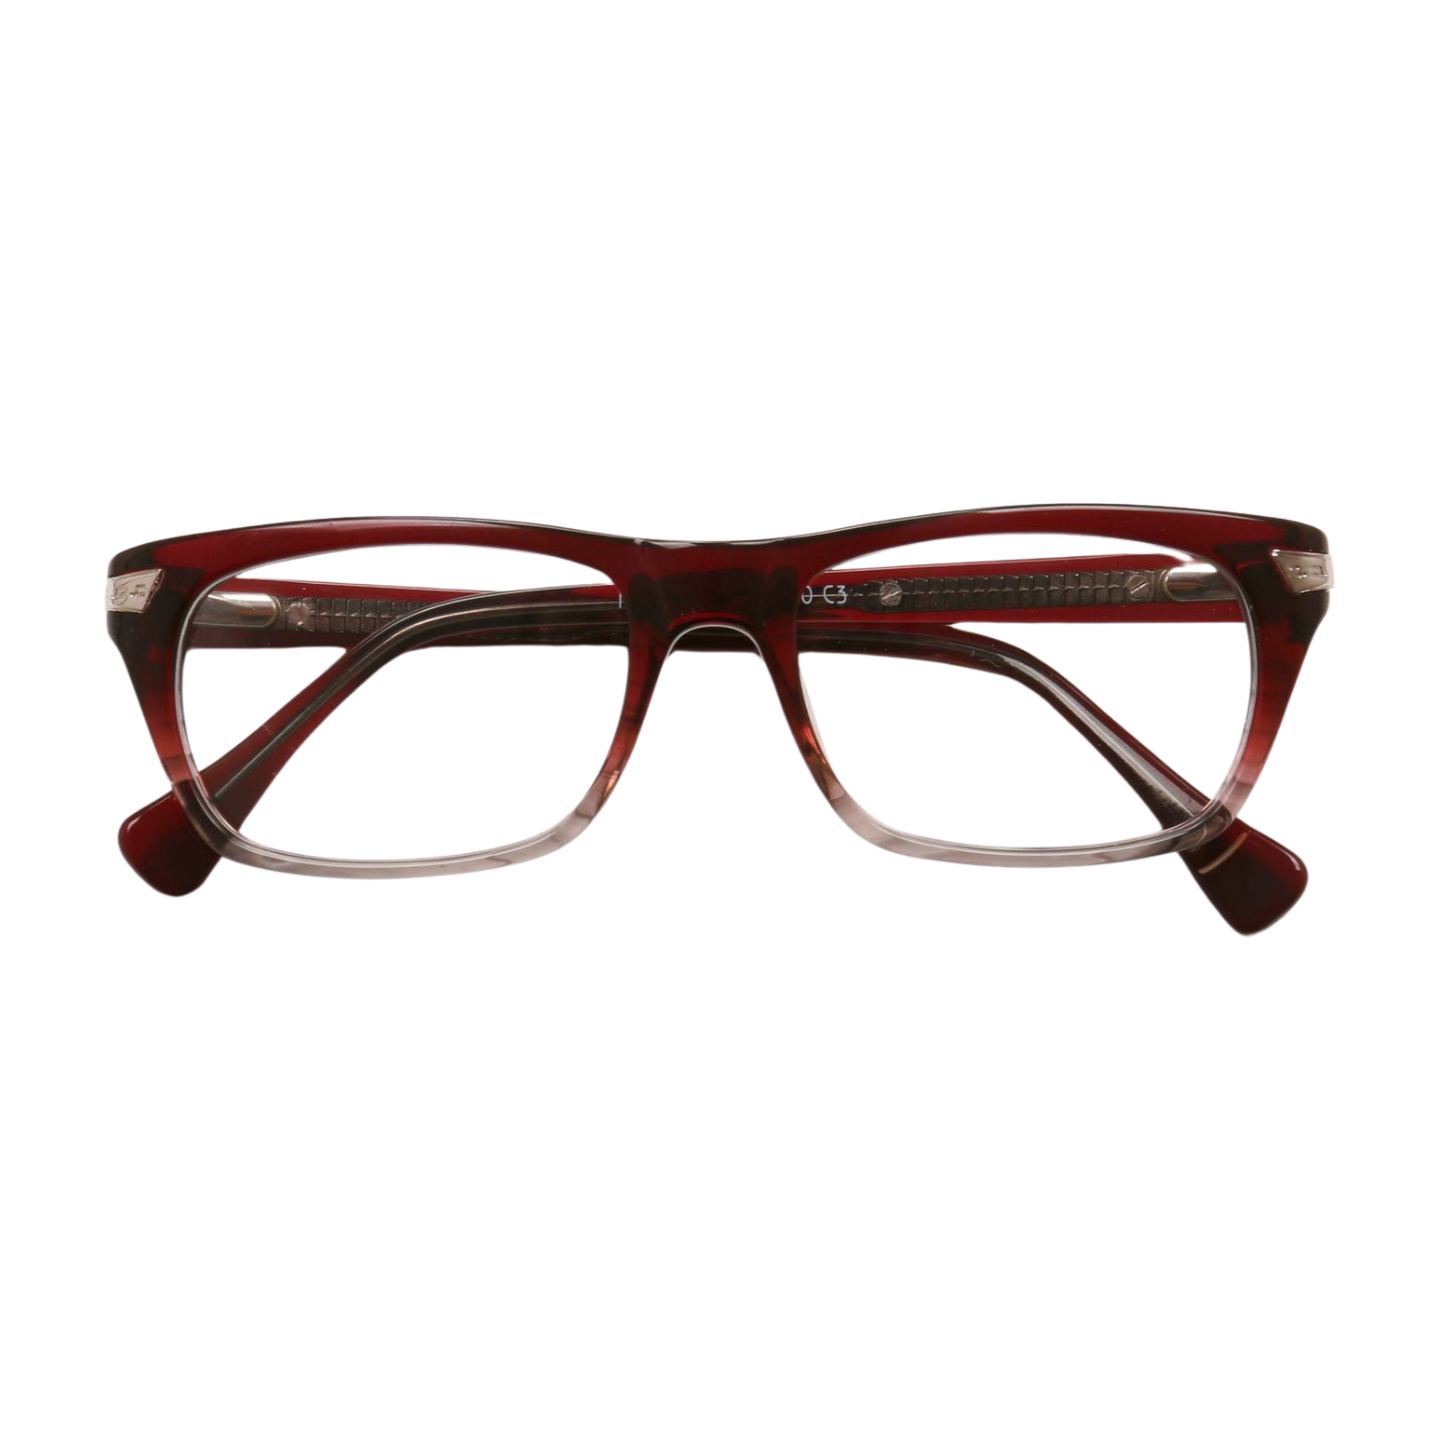 Oval Full Rim Unisex Eyeglasses, Pacific Unisex Eyeglasses Front View Red Color Frame from VivGlasses